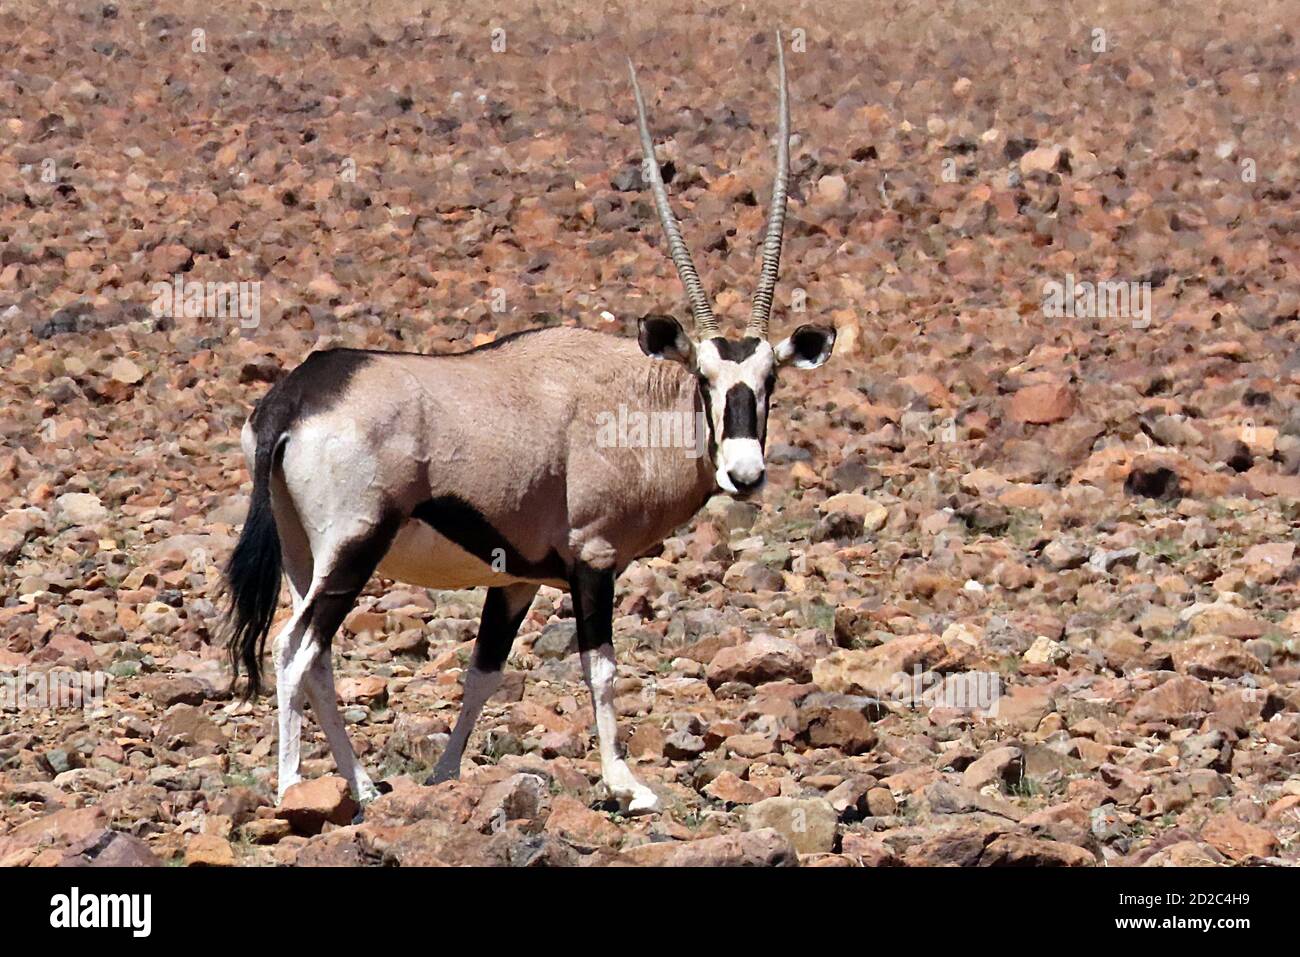 Un gembsok solitaire, ou oryx (Oryx gazella) marchant dans le désert rocheux du parc national Namib-Naukluft, Erongo, Namibie Banque D'Images